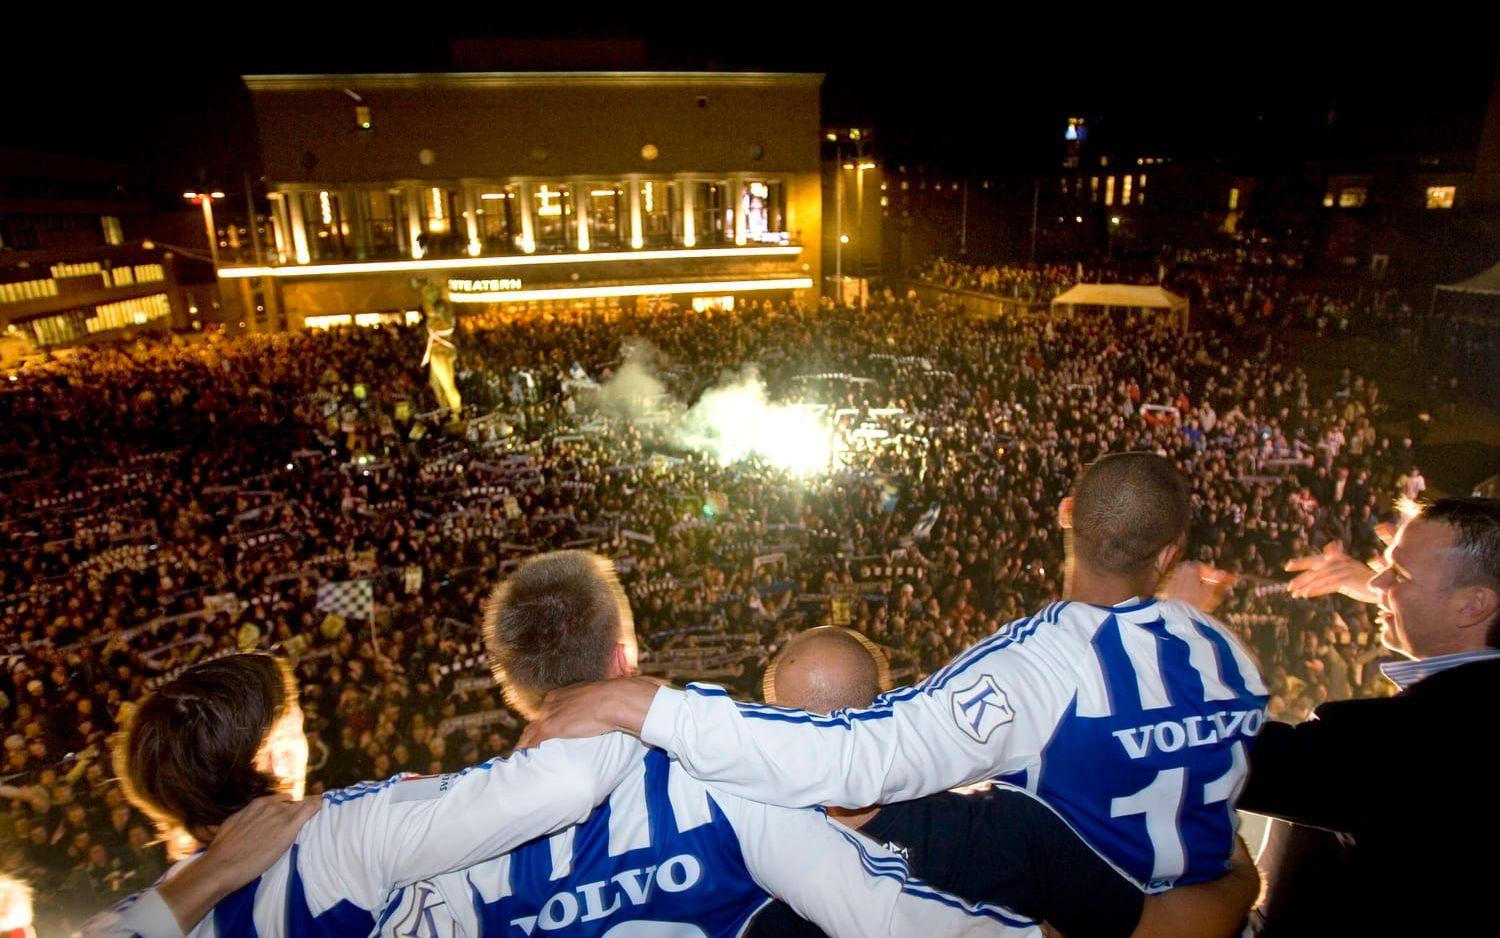 2007: IFK Göteborg, 8 poäng. Efter fyra omgångar stod Blåvitt på fem poäng efter kryss mot Trelleborg och Halmstad, vinst mot Brommapojkarna och hemmaförlust mot AIK. Tog sedan en klar seger borta mot Örebro och hade därmed en poängskörd på åtta poäng efter fem omgångar. Ett av de mästarlag under 2000-talet som har inlett sämst.